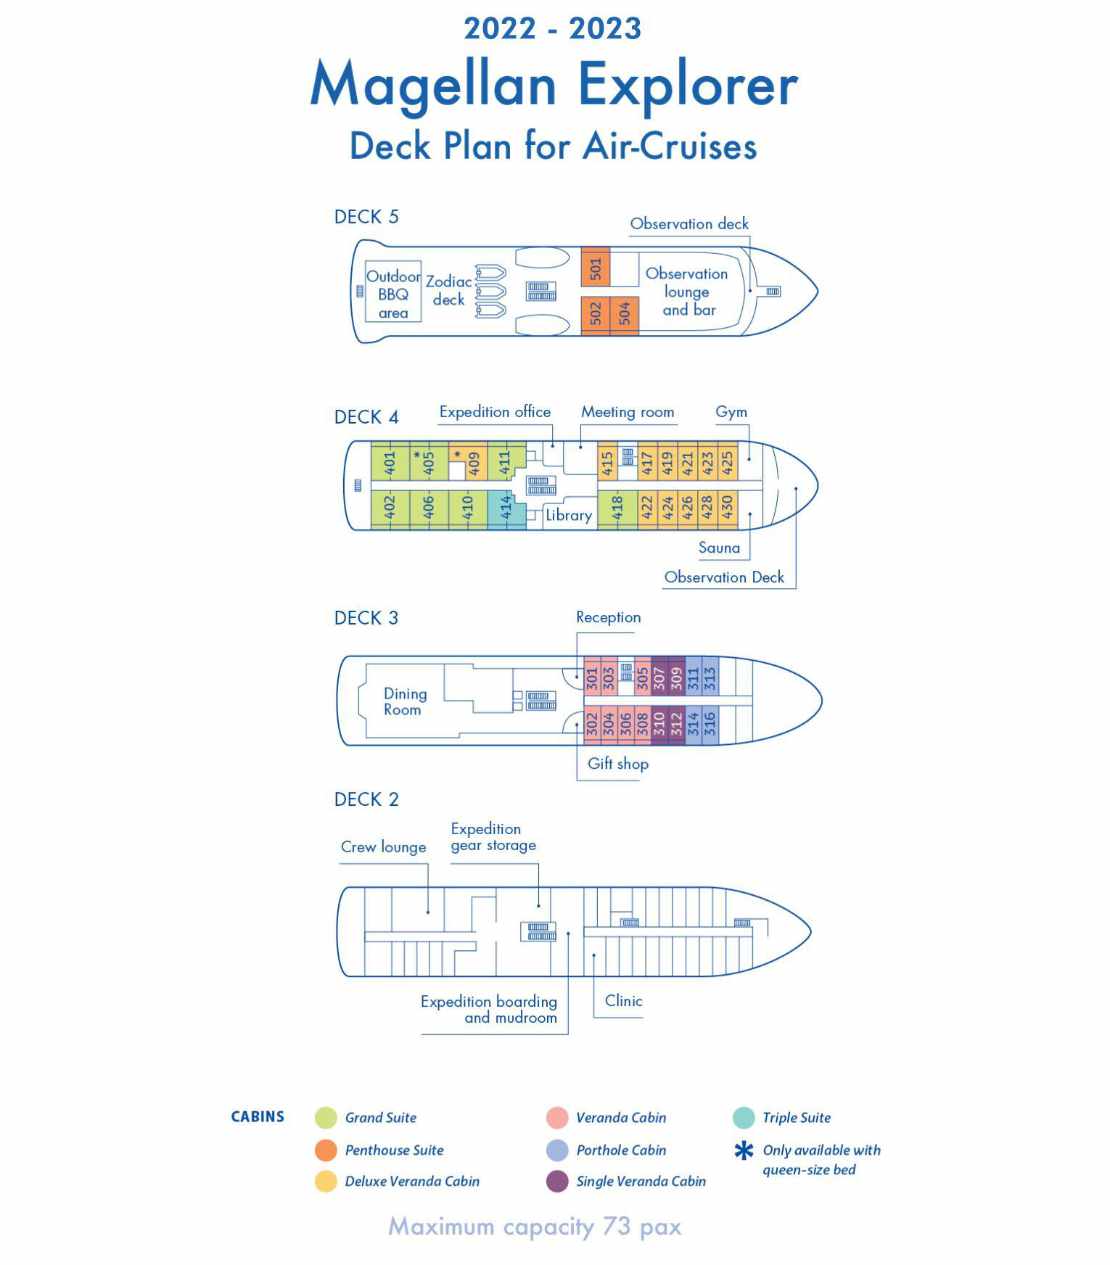 Magellan Explorer deck plan